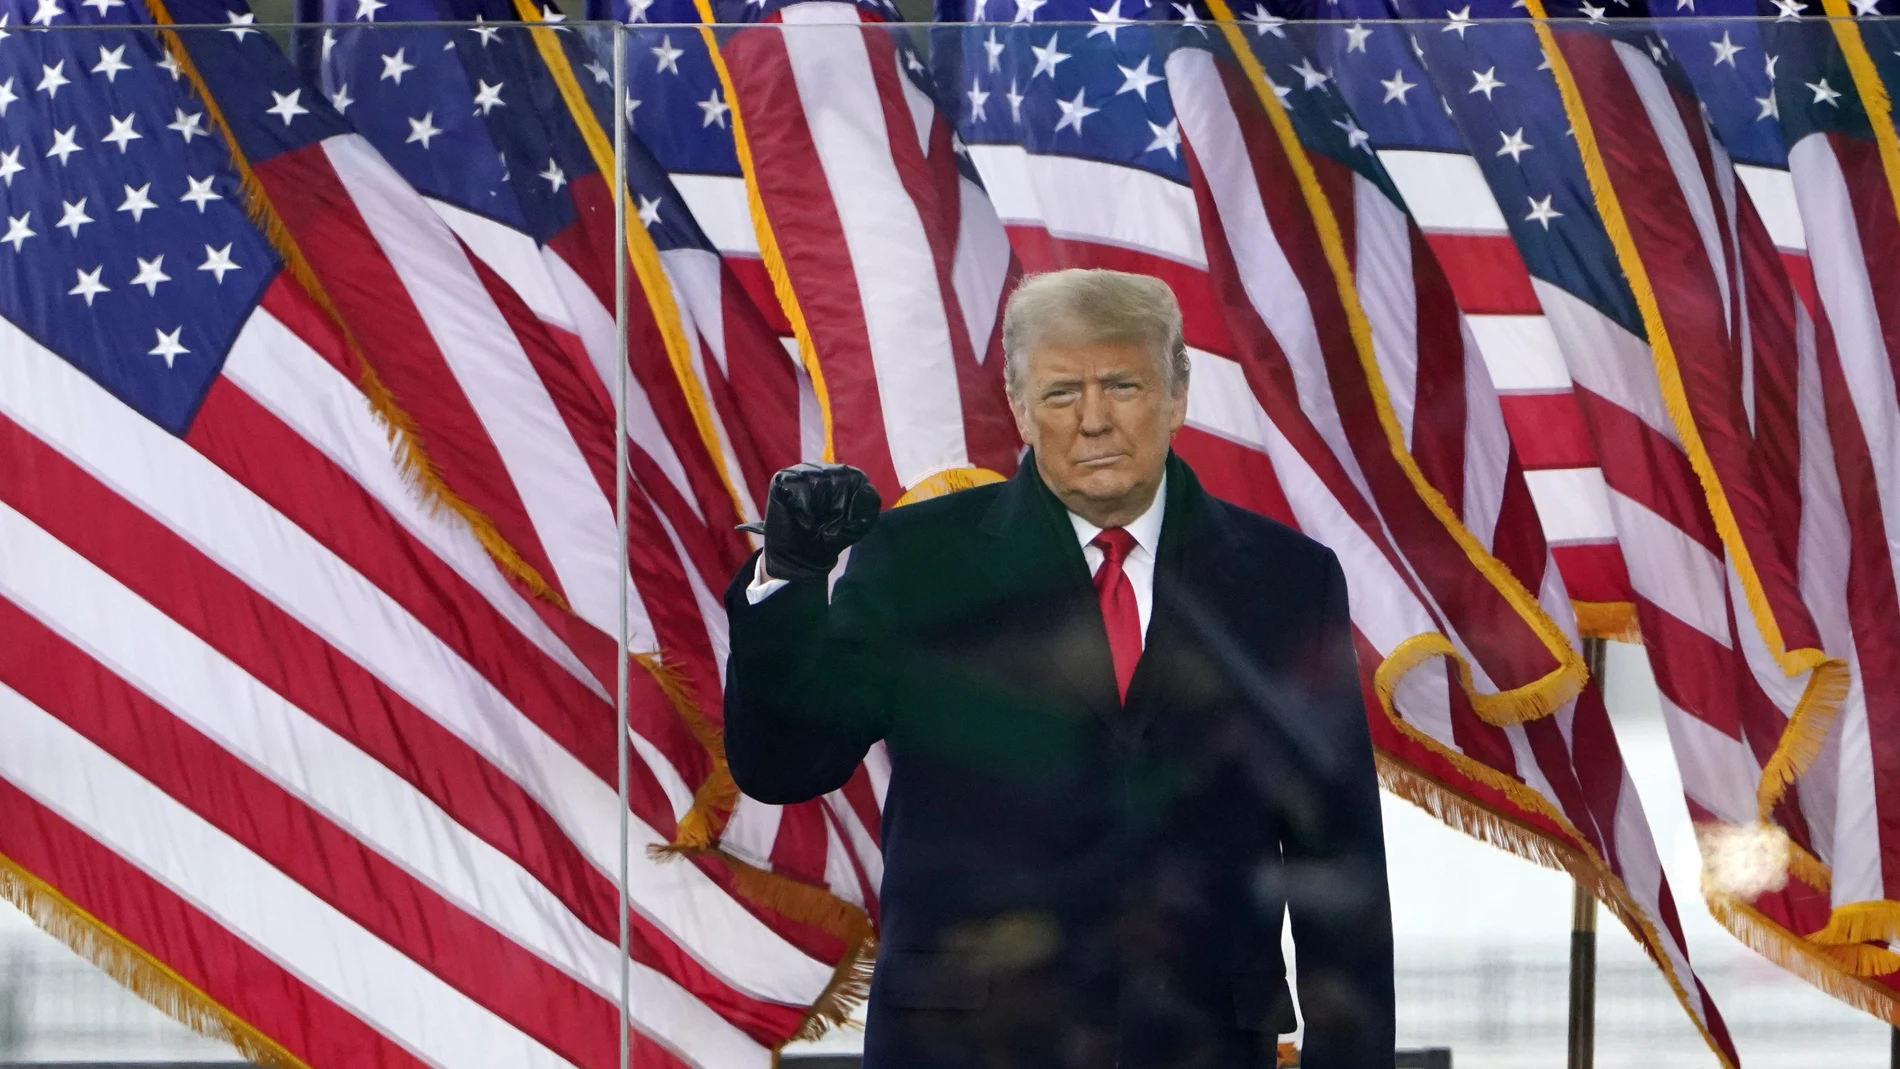 El presidente Donald Trump llega para hablar en un mitin el miércoles 6 de enero de 2021 en Washington. (AP Photo/Jacquelyn Martin)